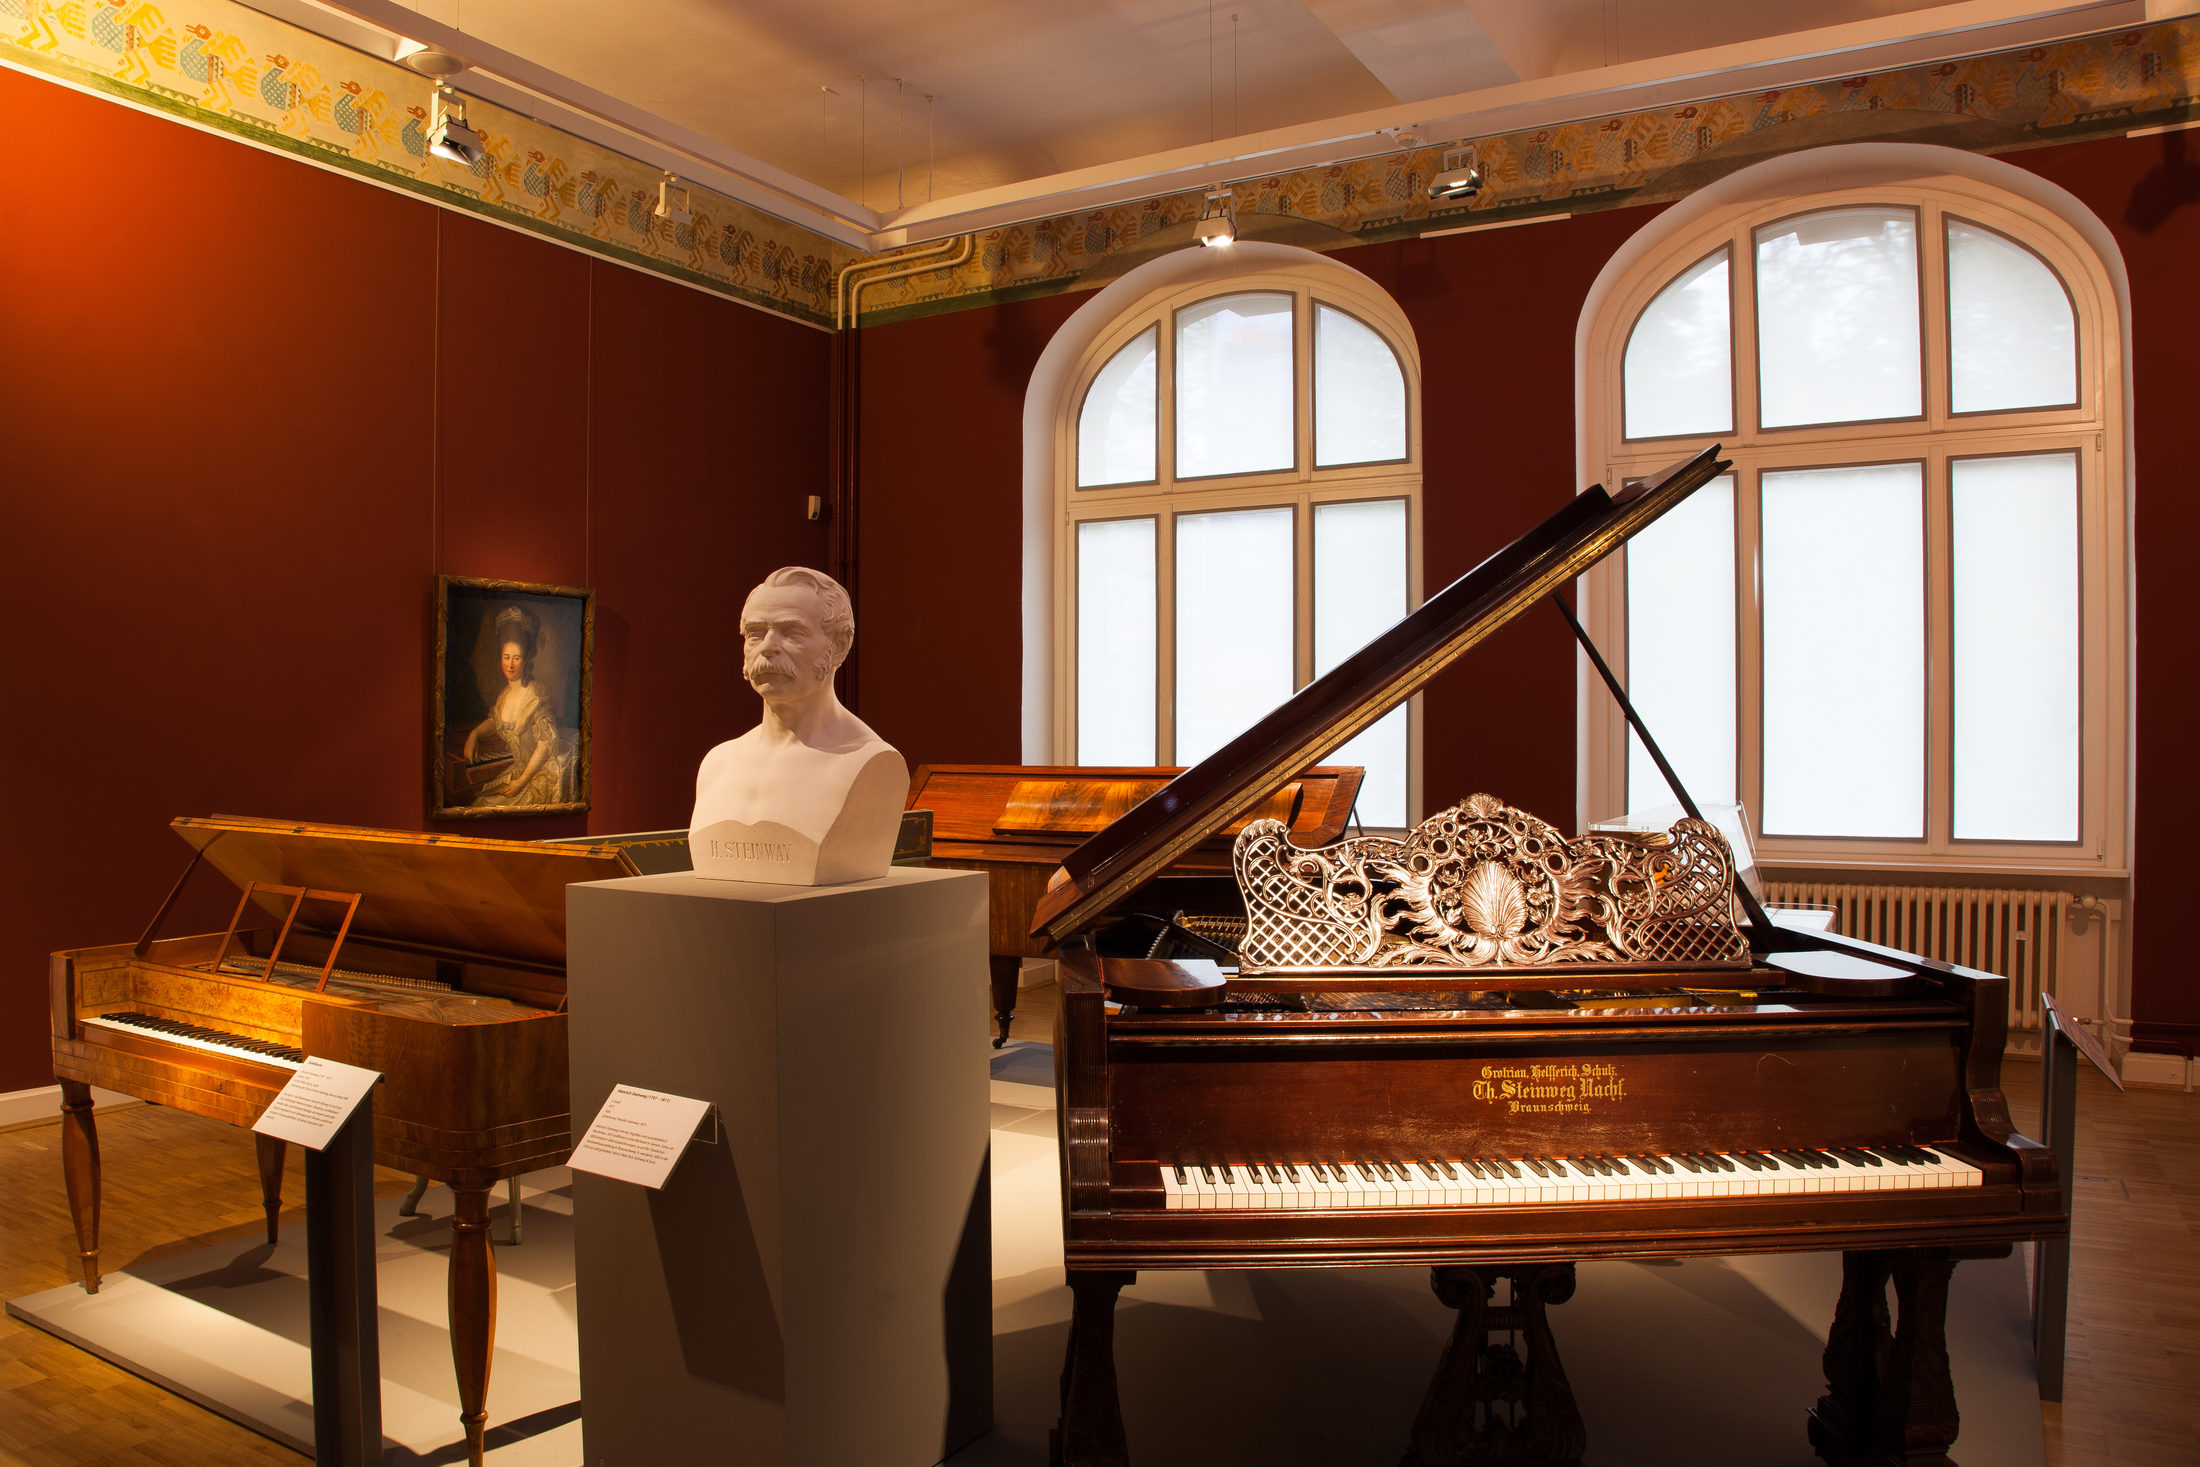 Einblick in die Ausstellungsräume des Hauses am Löwenwall mit Klavieren aus unterschiedlichen Zeiten, einer Gips-Büste und einem Gemälde